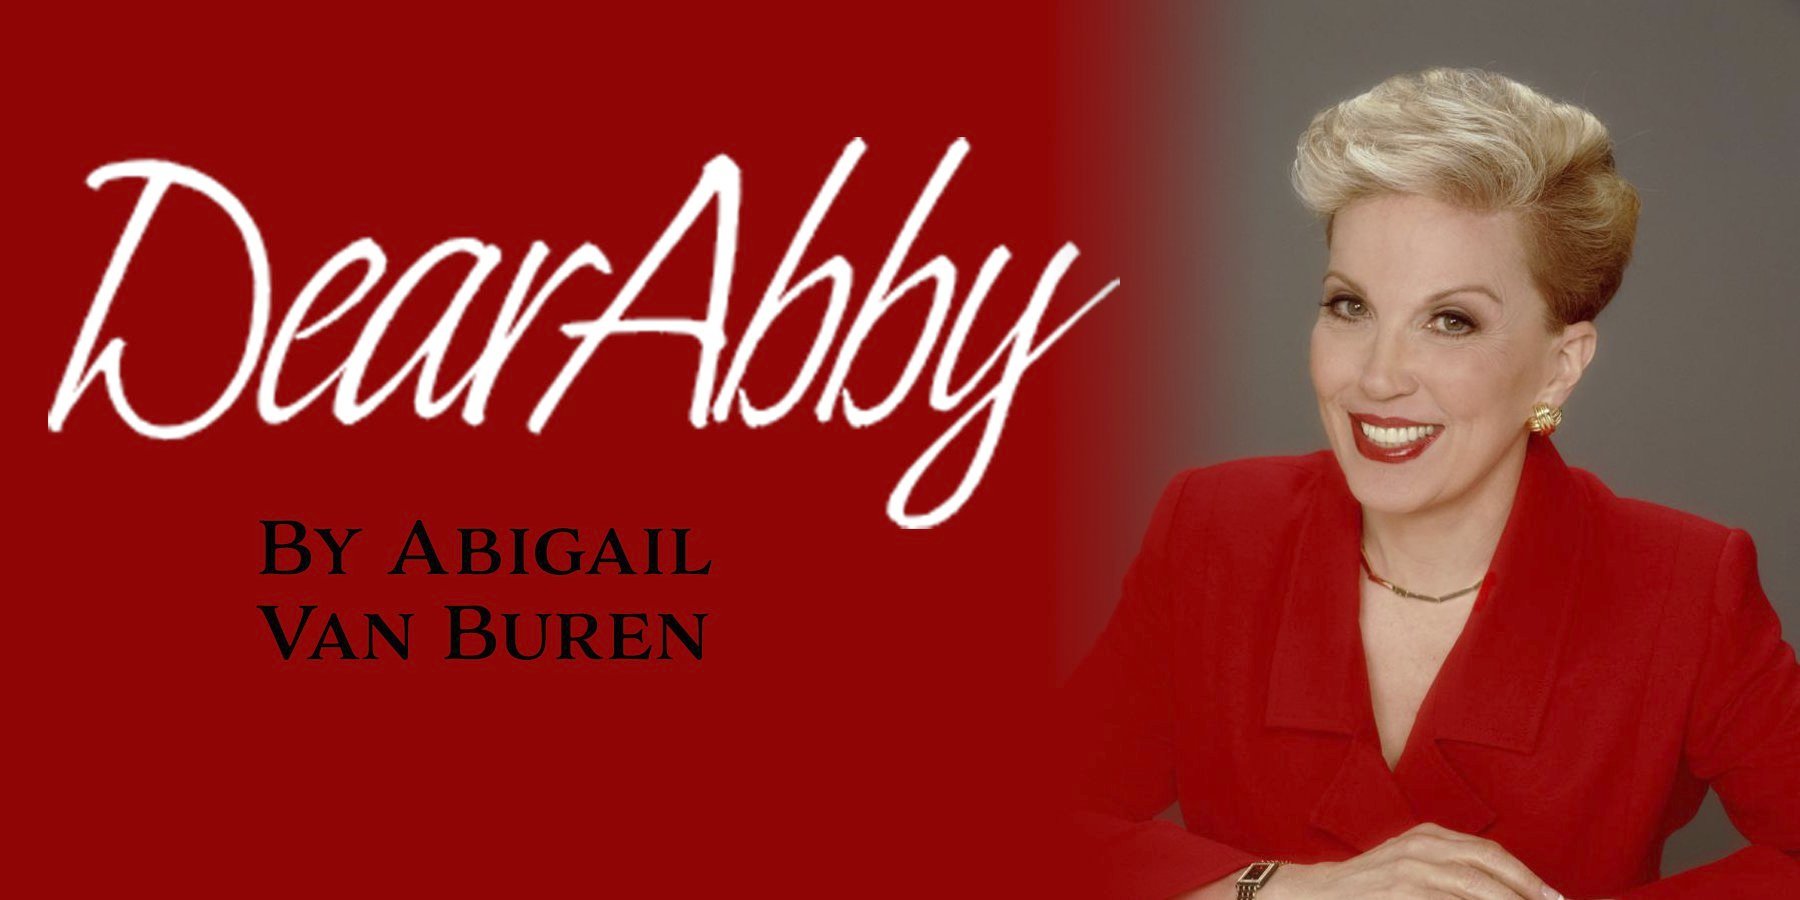 Dear Abby